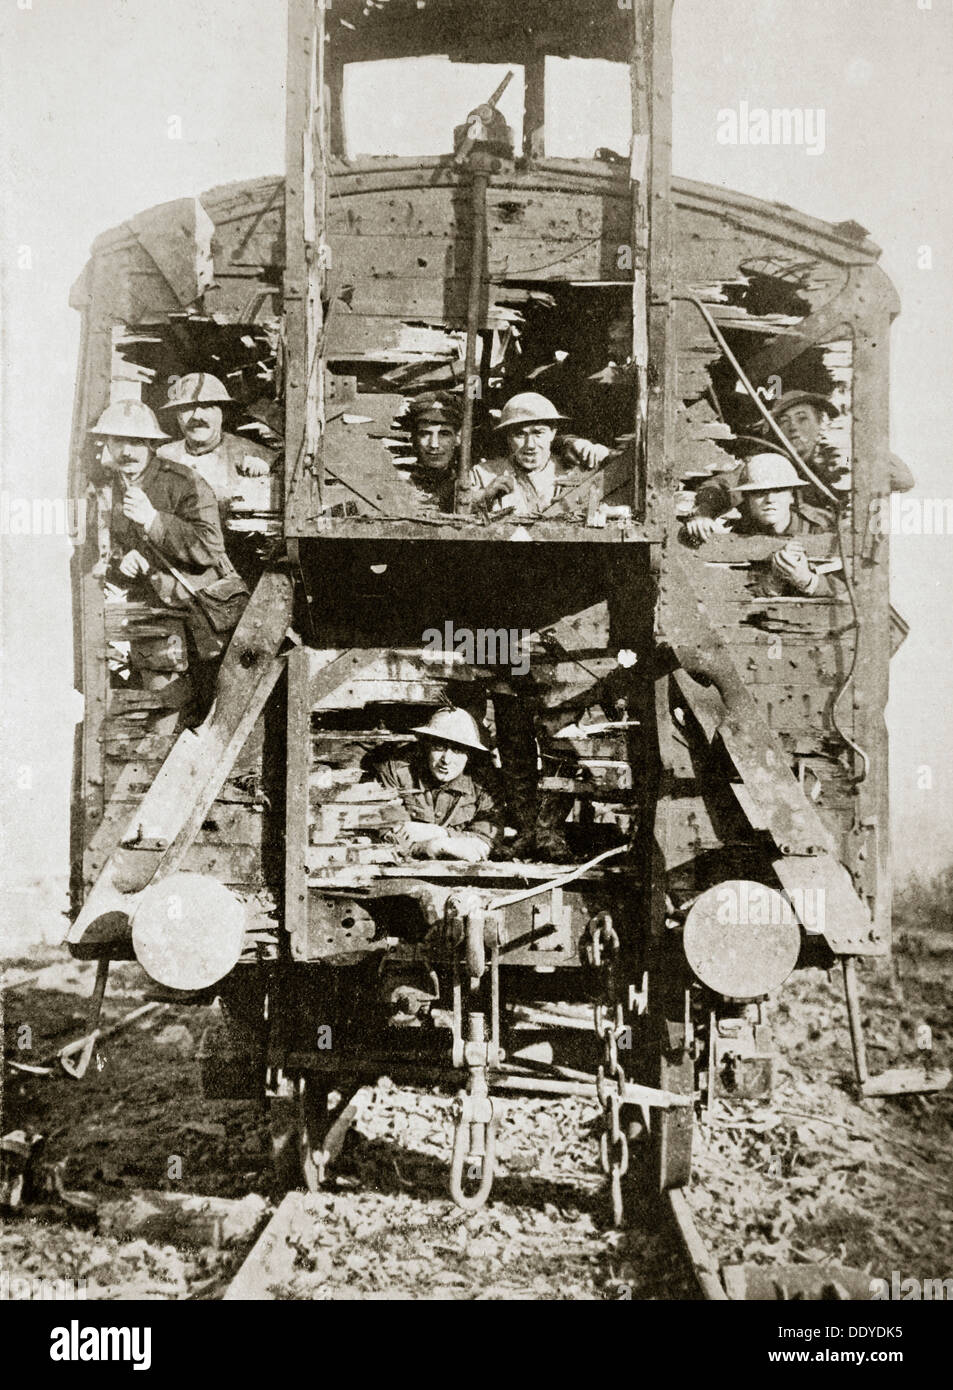 Transport ferroviaire allemands capturés, l'Ancre, en France, la Première Guerre mondiale, 1916. Artiste : Inconnu Banque D'Images